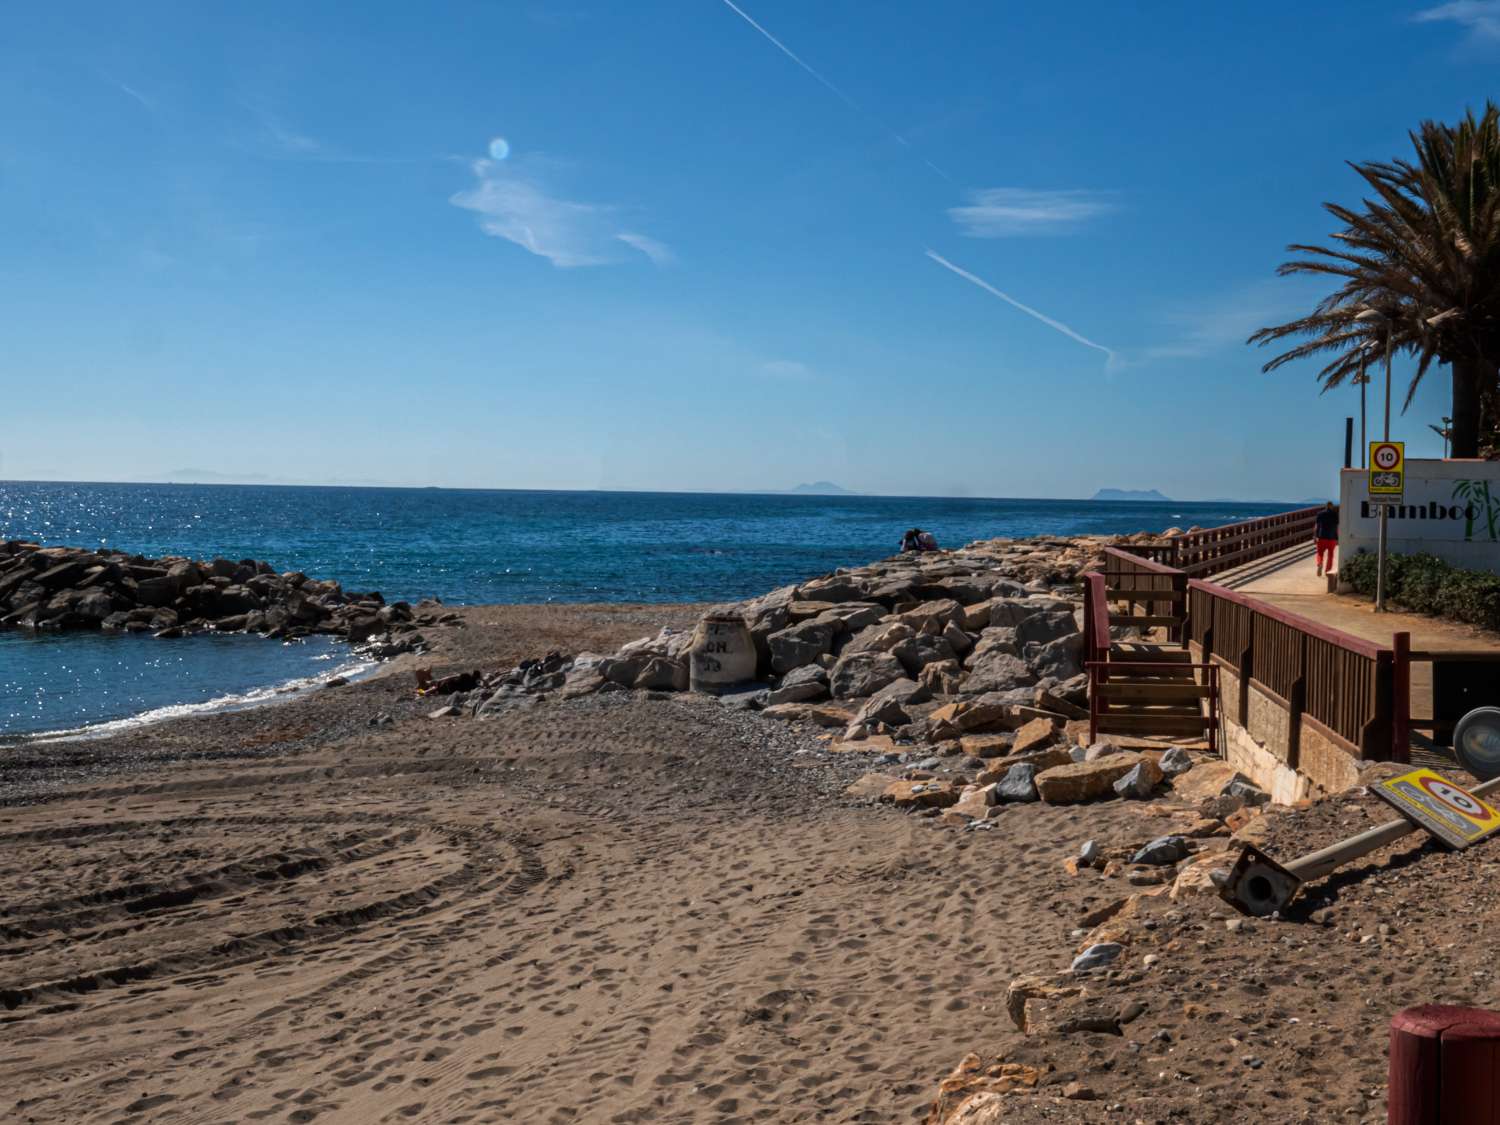 Wohnung direkt am Strand ganz in der Nähe von Puerto Banús, direkt am Meer.